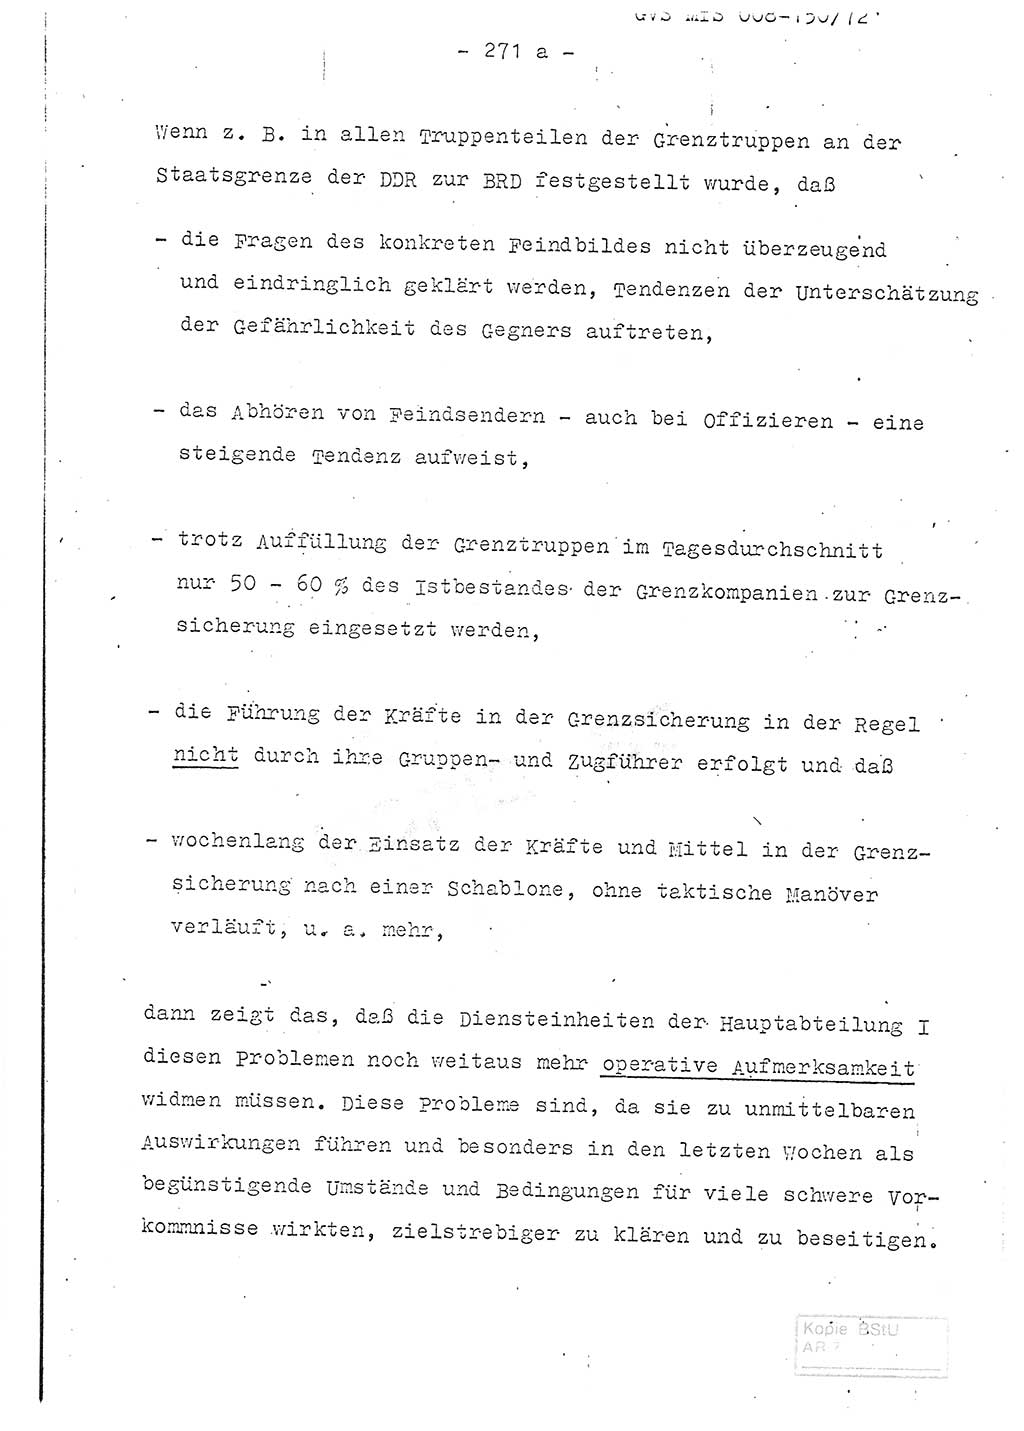 Referat (Entwurf) des Genossen Minister (Generaloberst Erich Mielke) auf der Dienstkonferenz 1972, Ministerium für Staatssicherheit (MfS) [Deutsche Demokratische Republik (DDR)], Der Minister, Geheime Verschlußsache (GVS) 008-150/72, Berlin 25.2.1972, Seite 271/1 (Ref. Entw. DK MfS DDR Min. GVS 008-150/72 1972, S. 271/1)